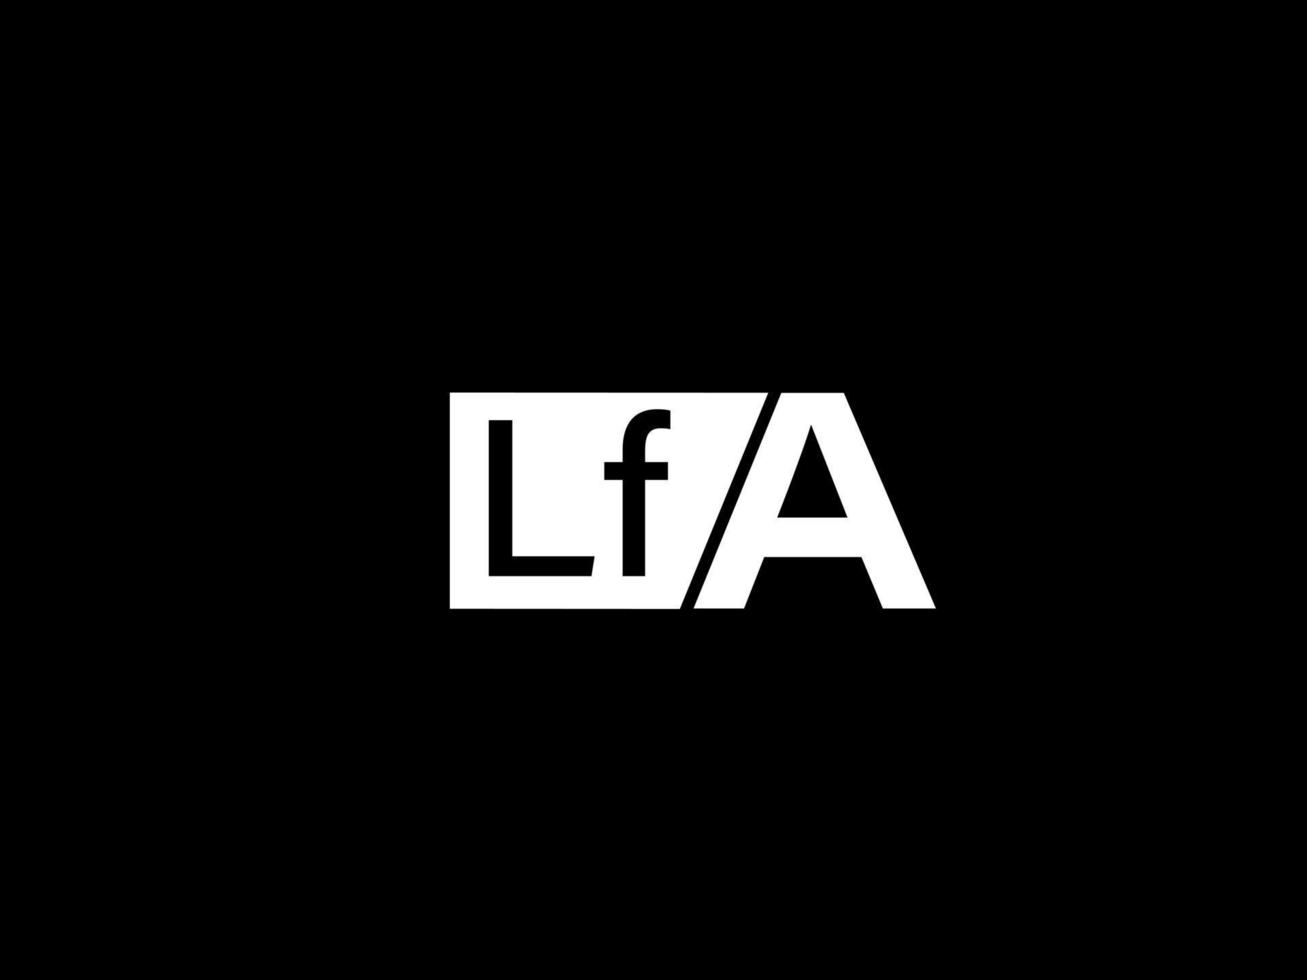 lfa logotipo e arte vetorial de design gráfico, ícones isolados em fundo preto vetor